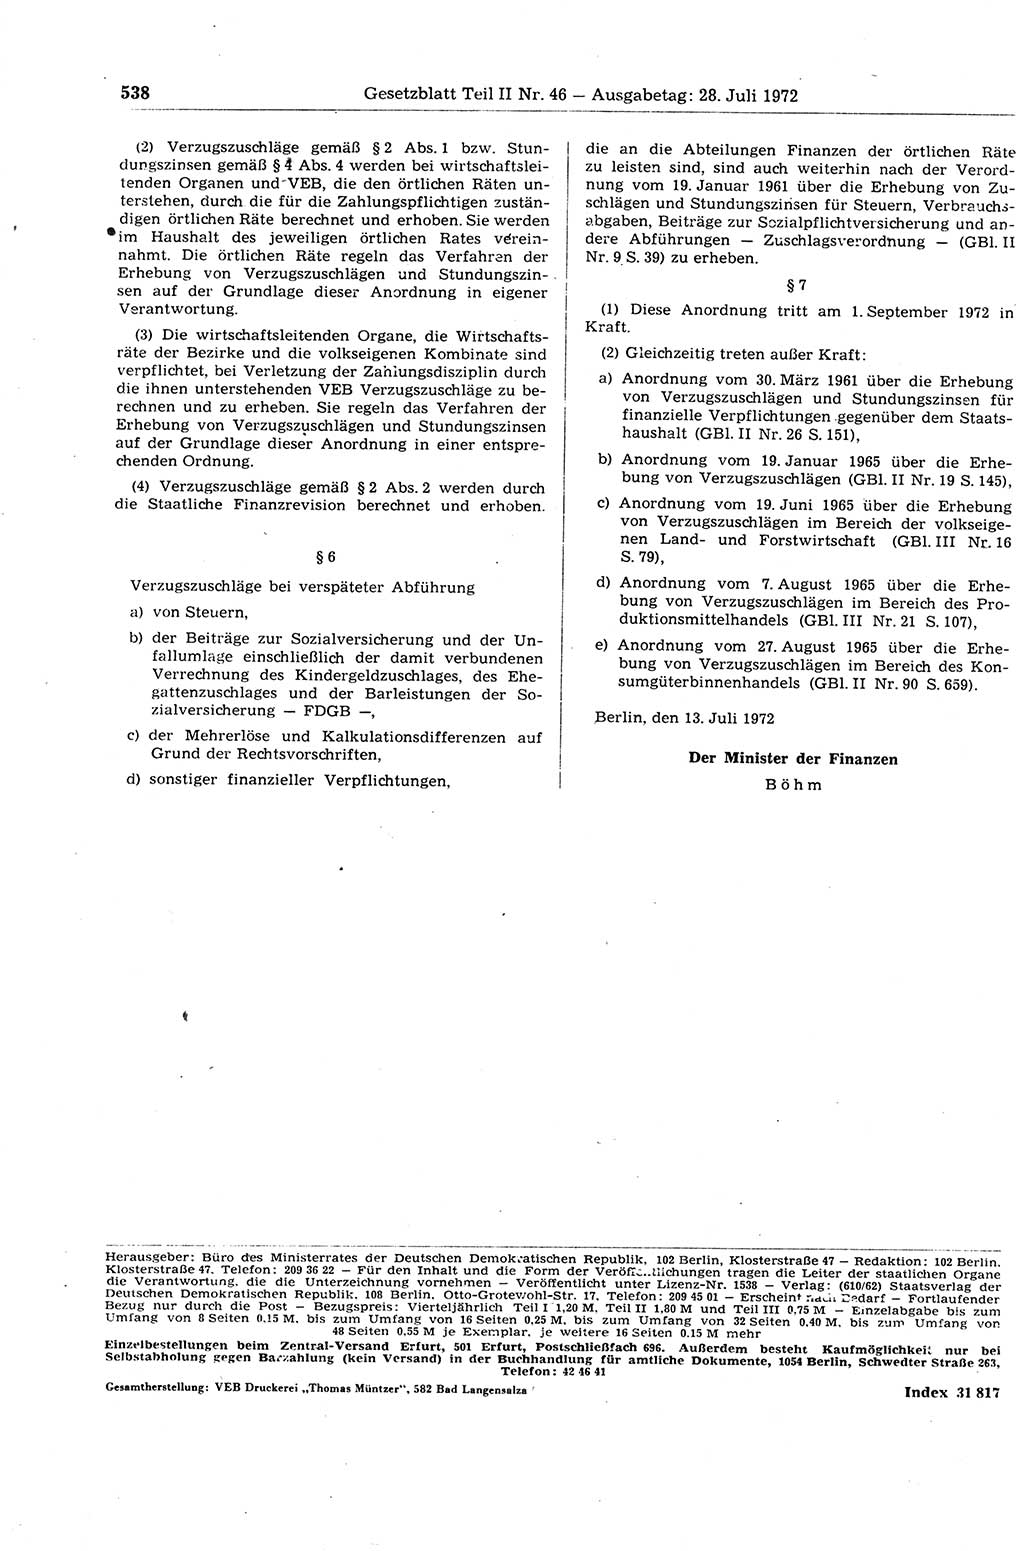 Gesetzblatt (GBl.) der Deutschen Demokratischen Republik (DDR) Teil ⅠⅠ 1972, Seite 538 (GBl. DDR ⅠⅠ 1972, S. 538)